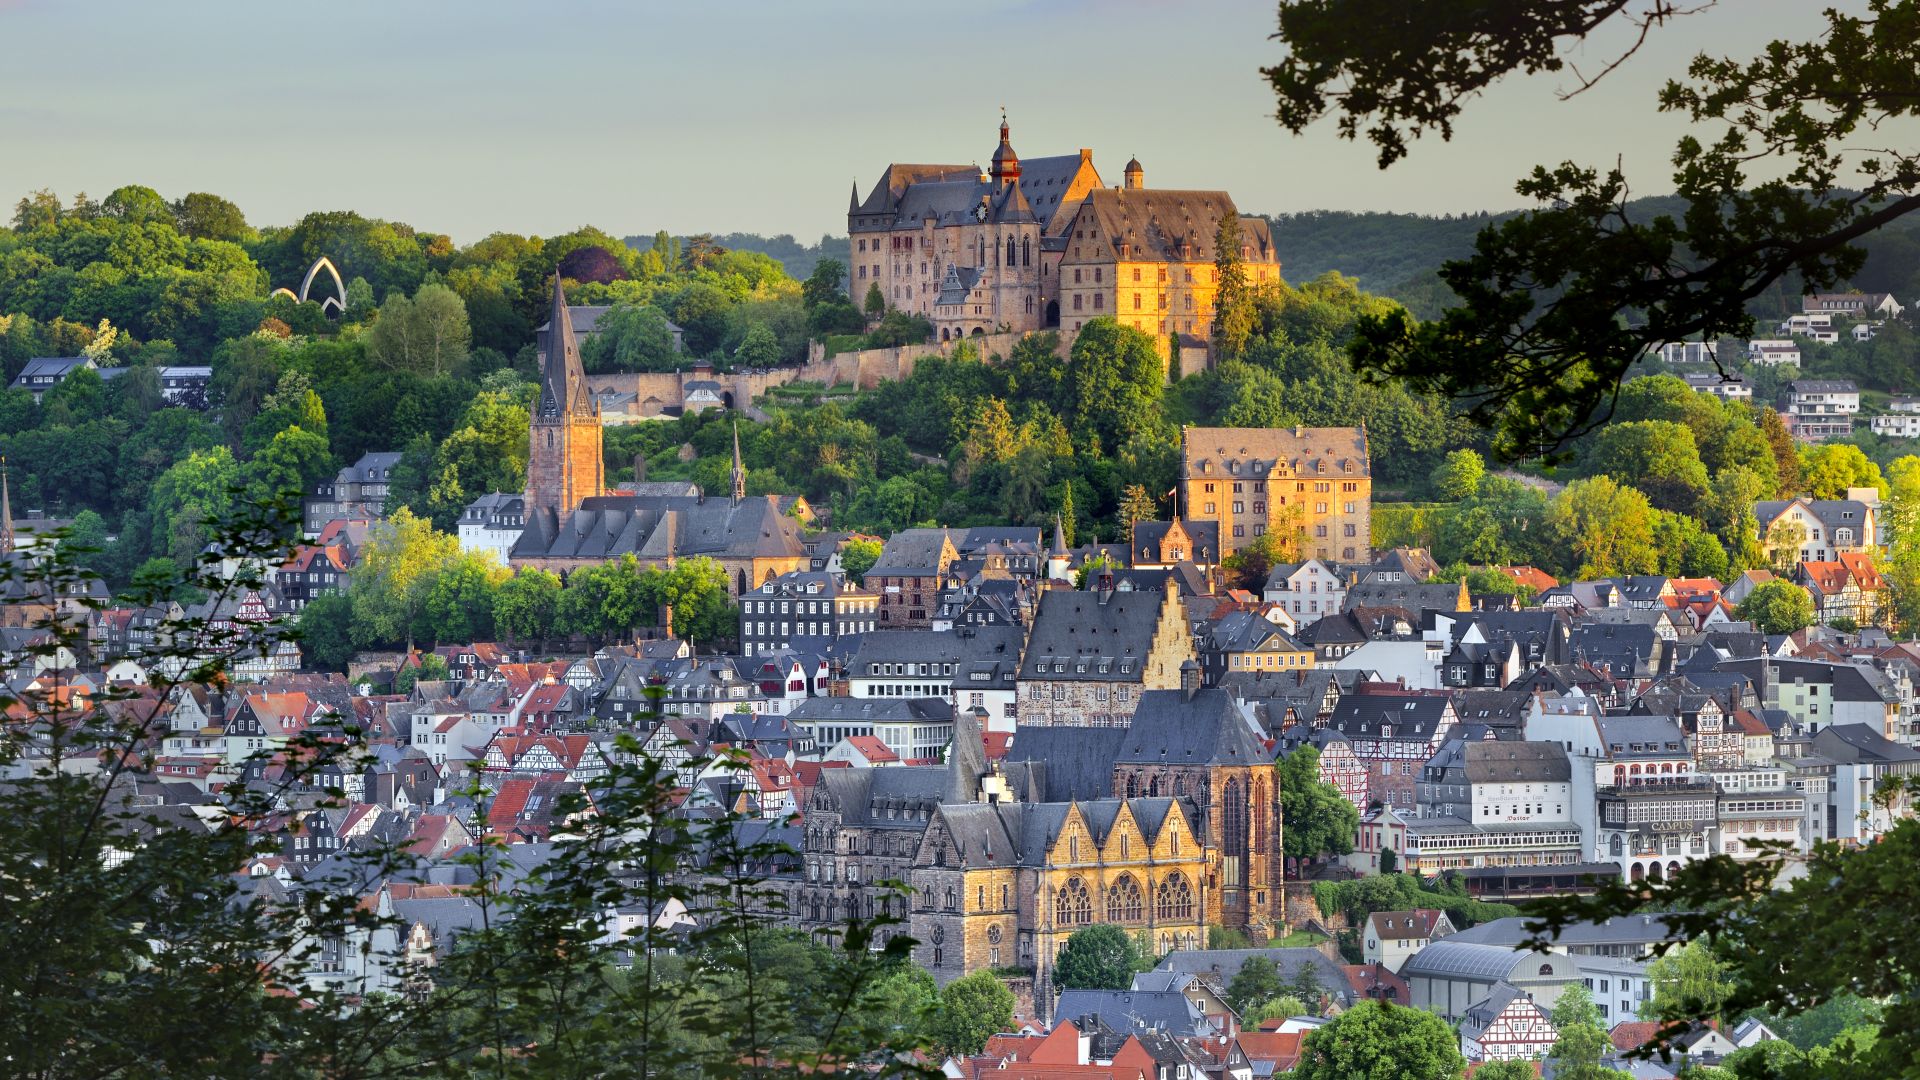 Marburg-Biedenkopf: Vue sur la vieille ville jusqu'au château du landgrave